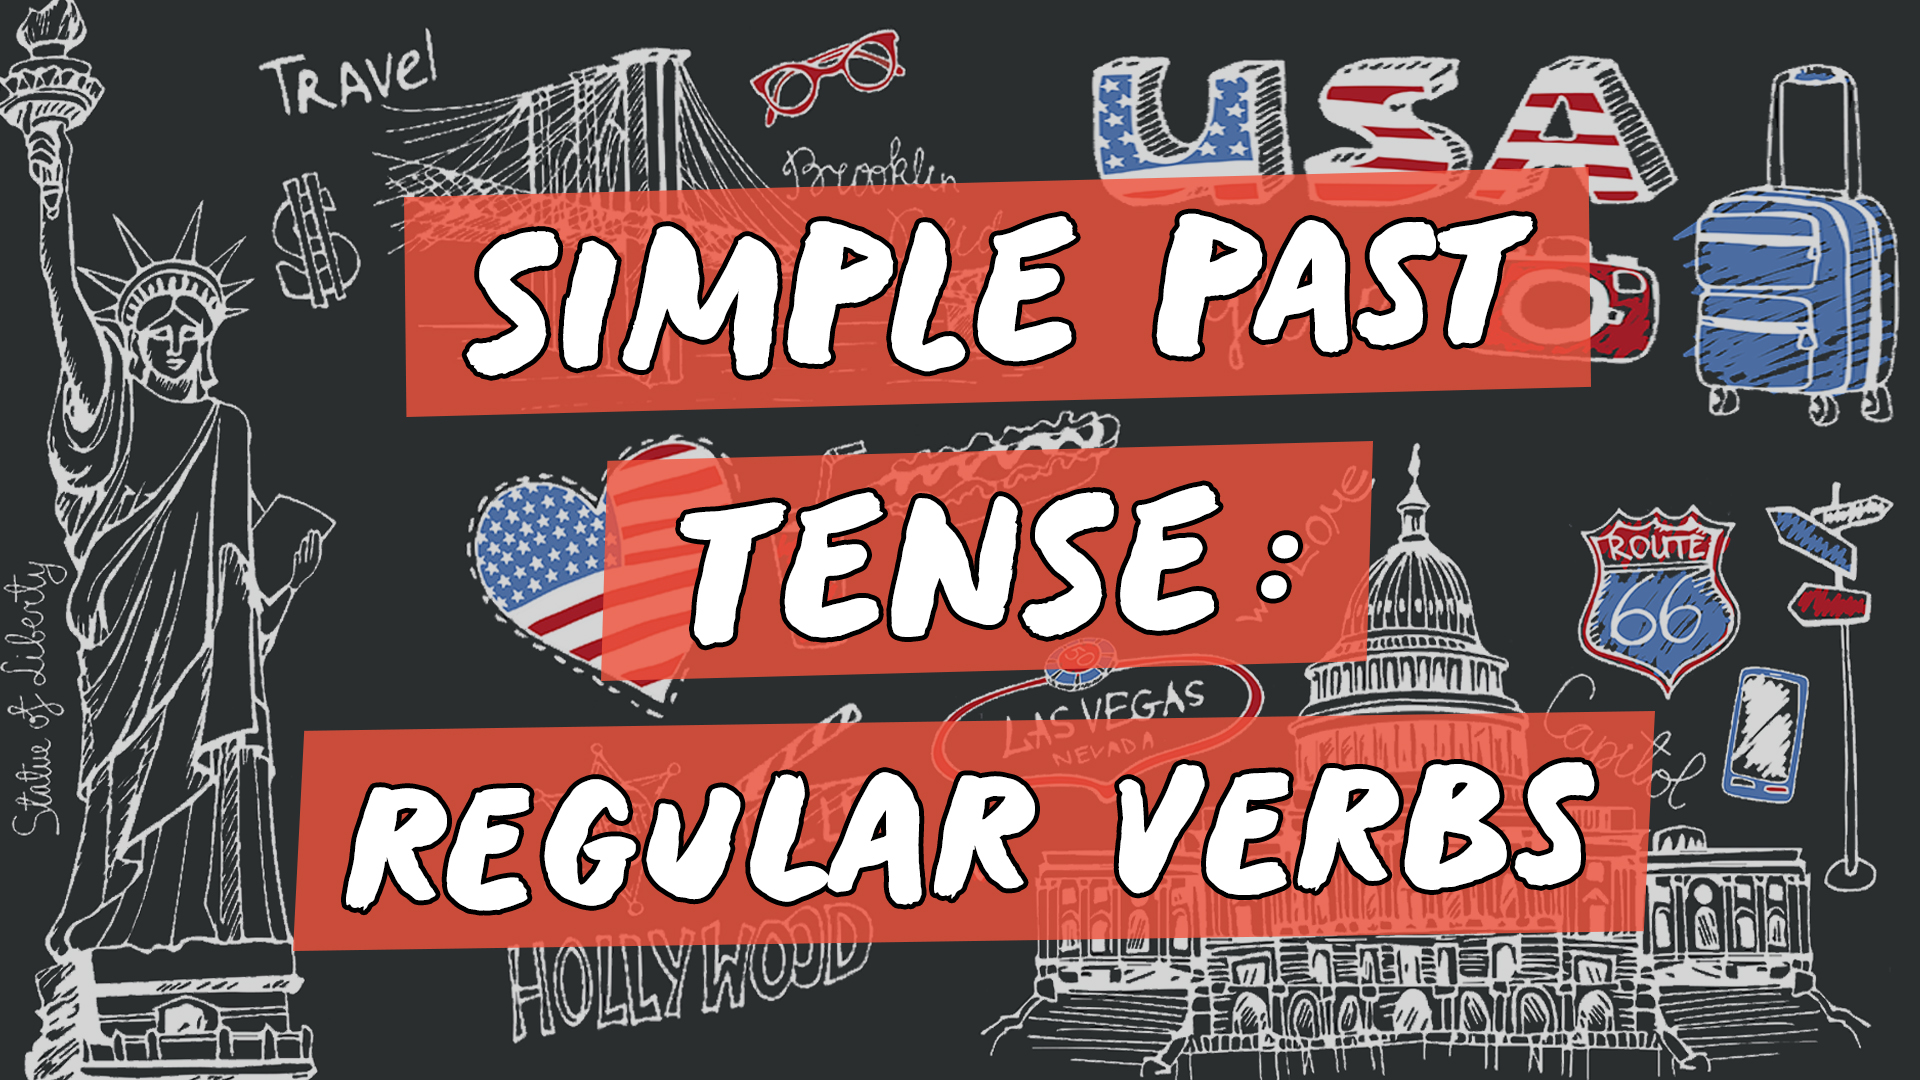 Escrito"Simple Past Tense: Regular Verbs" sobre representação de vários elementos da cultura do inglês americano.